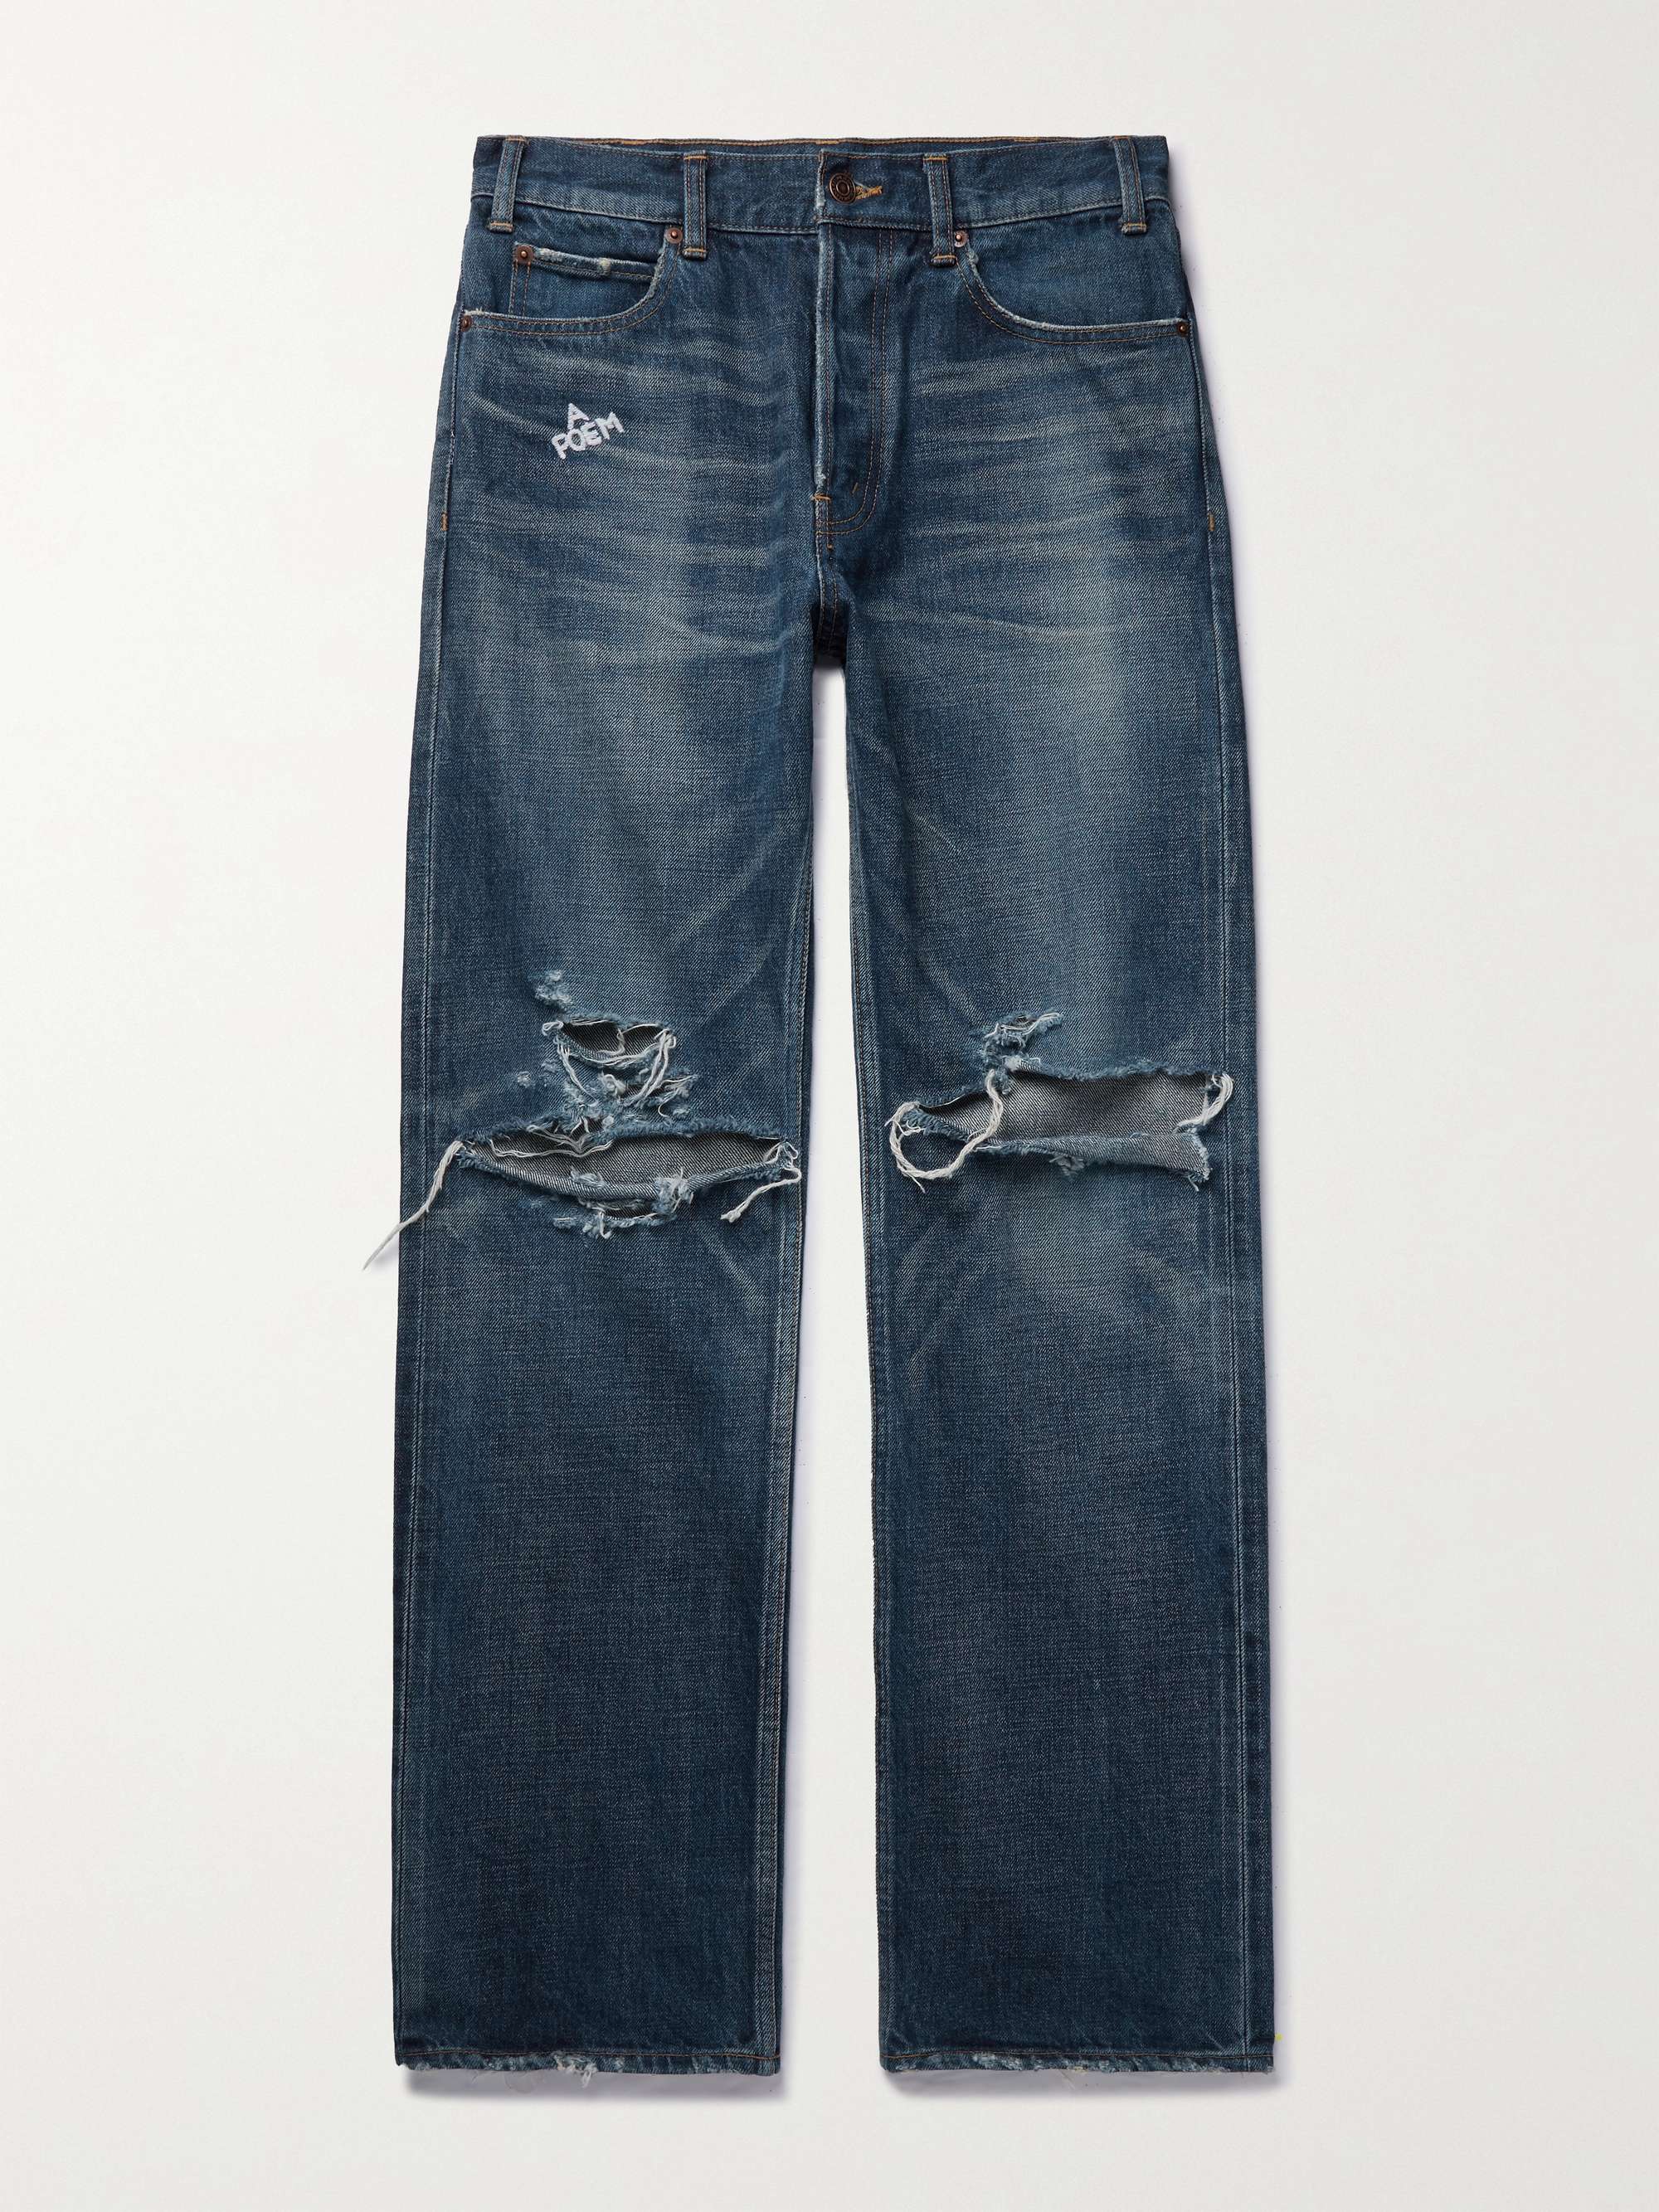 셀린느 옴므 커트 셀비지 청바지 CELINE HOMME Kurt Distressed Selvedge Jeans,Blue